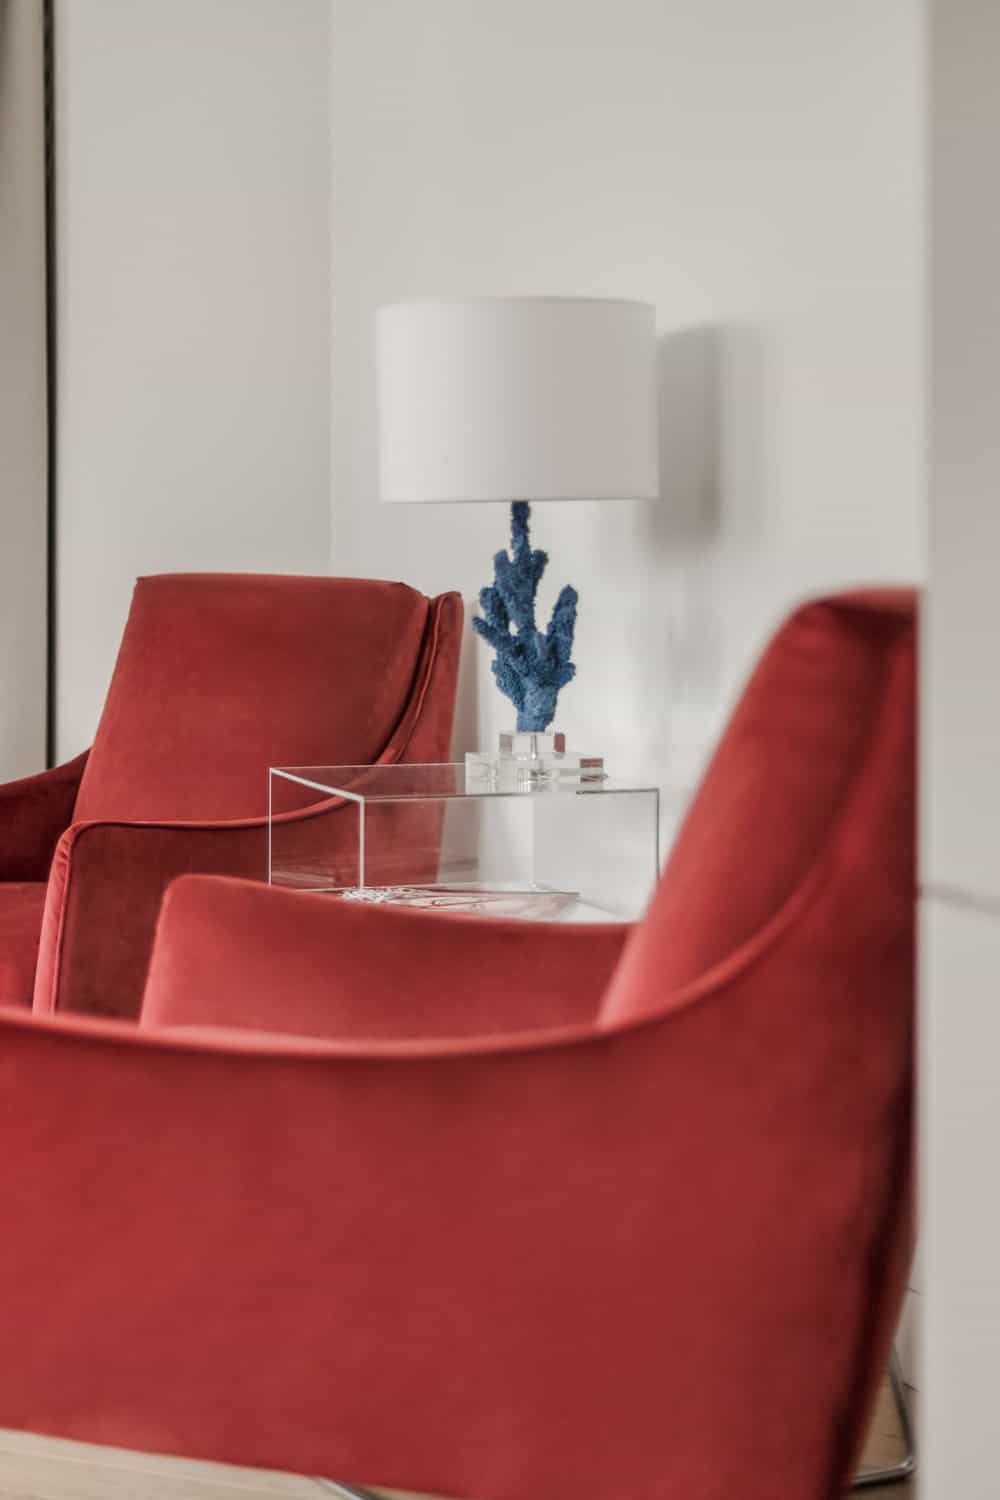 在这两张红色天鹅绒扶手椅之间是一张现代的玻璃边桌，上面有一盏台灯。